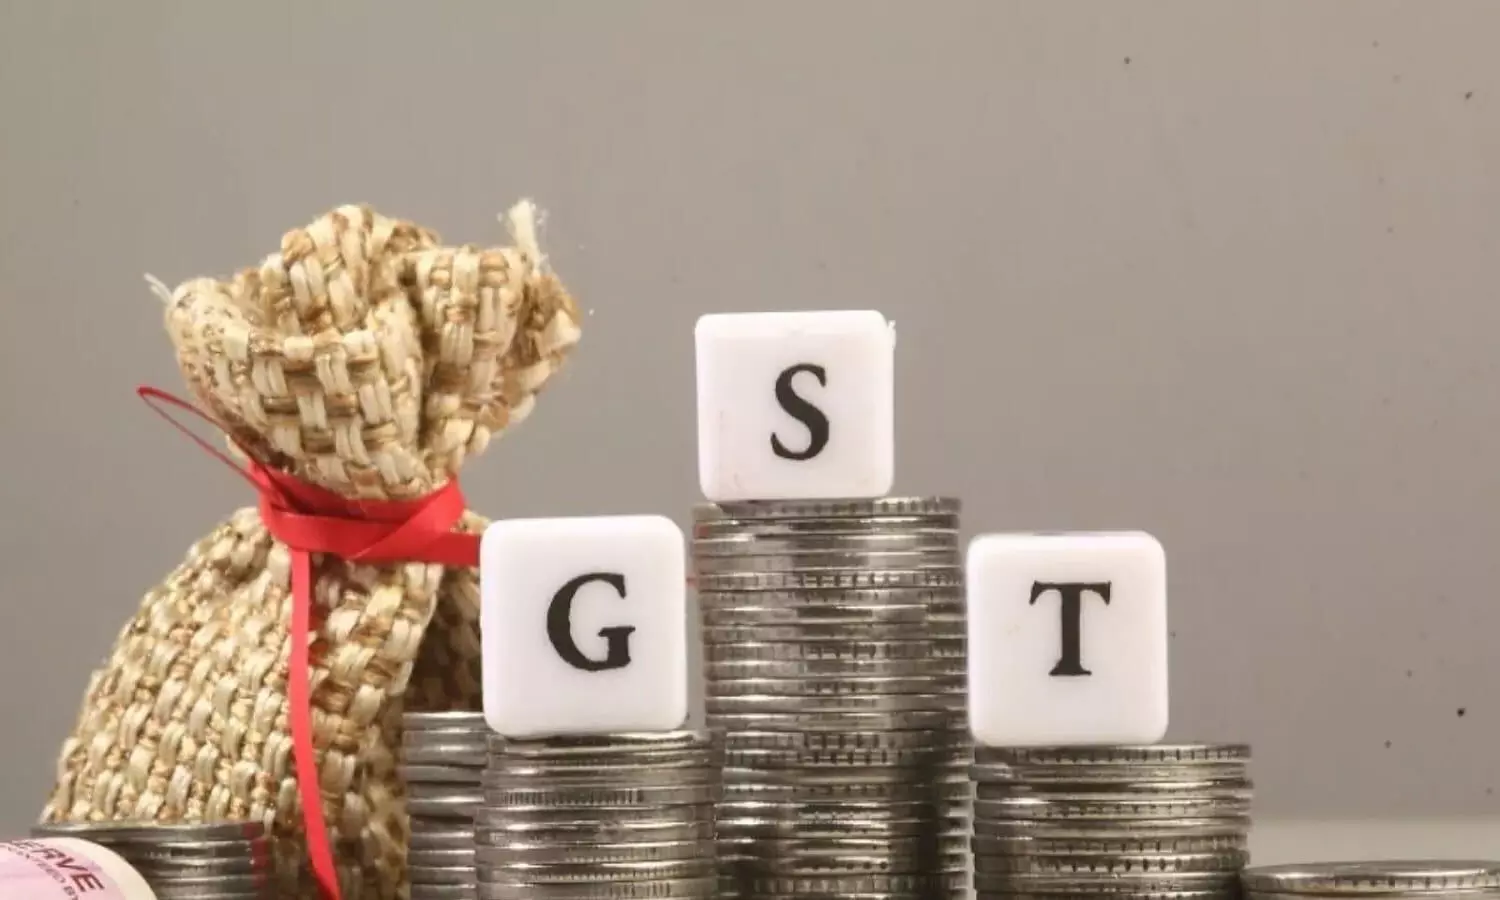 GST Collection: जून में सरकार को मिले 1.44 करोड़ रूपए, जीएसटी कलेक्शन 56 प्रतिशत तक बढ़ा